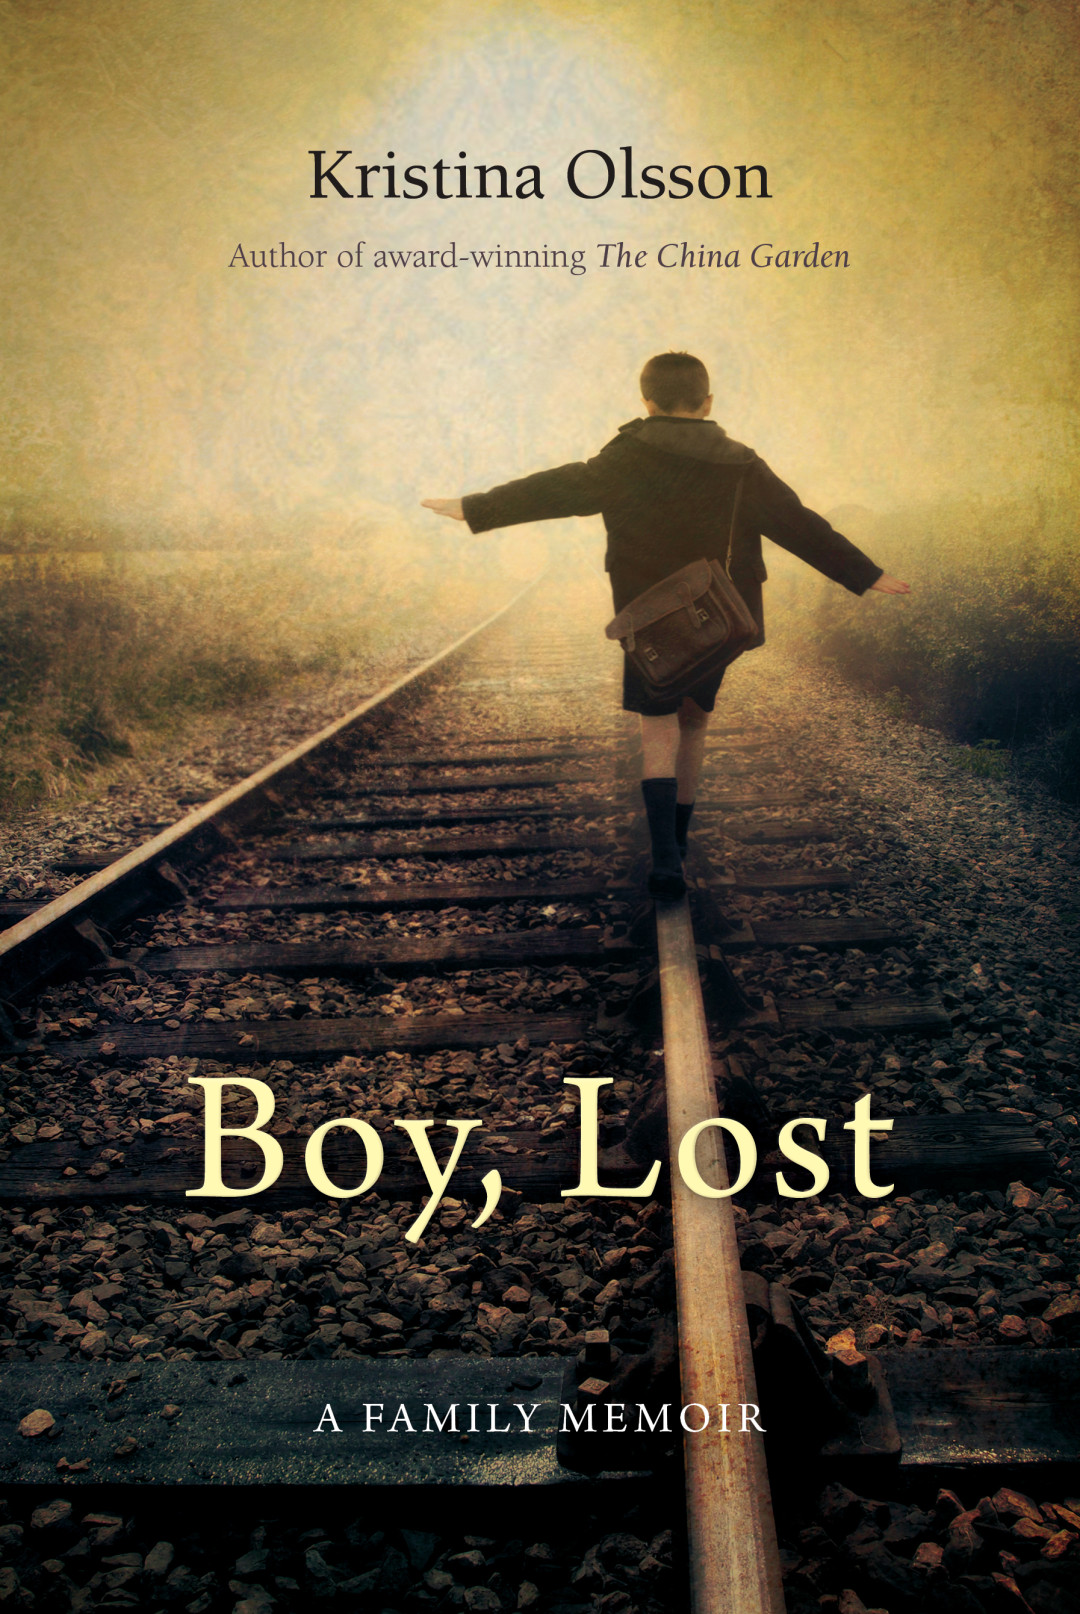 The Lost Boys by Craig Shaw Gardner